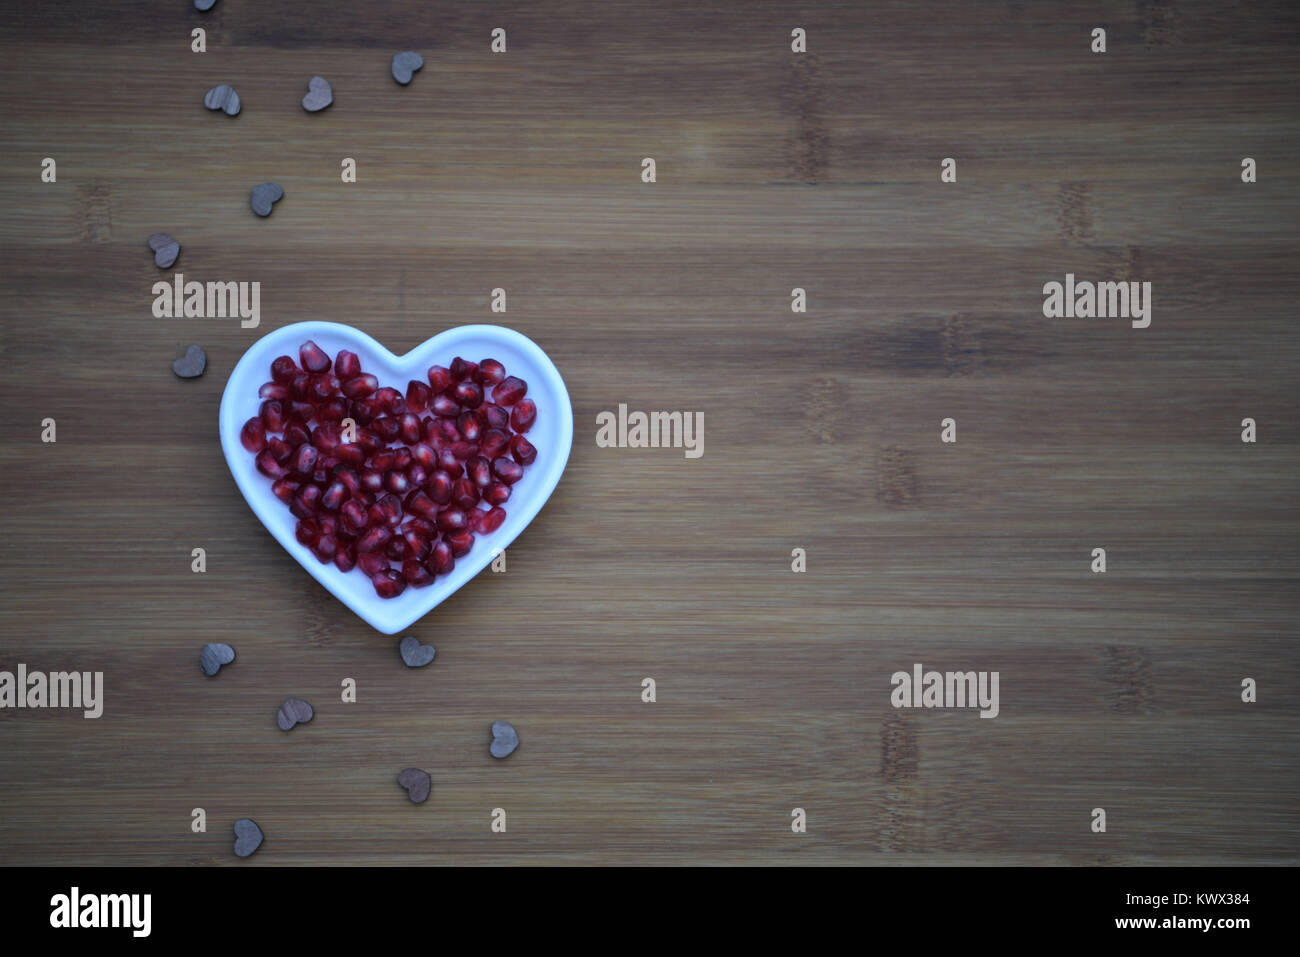 Gesundes Essen Fotografie rot glänzend saftig glänzenden Granatapfel Samen in Weiß Herz Form Gericht mit Liebe Herz Dekorationen auf Holz Hintergrund und Raum Stockfoto